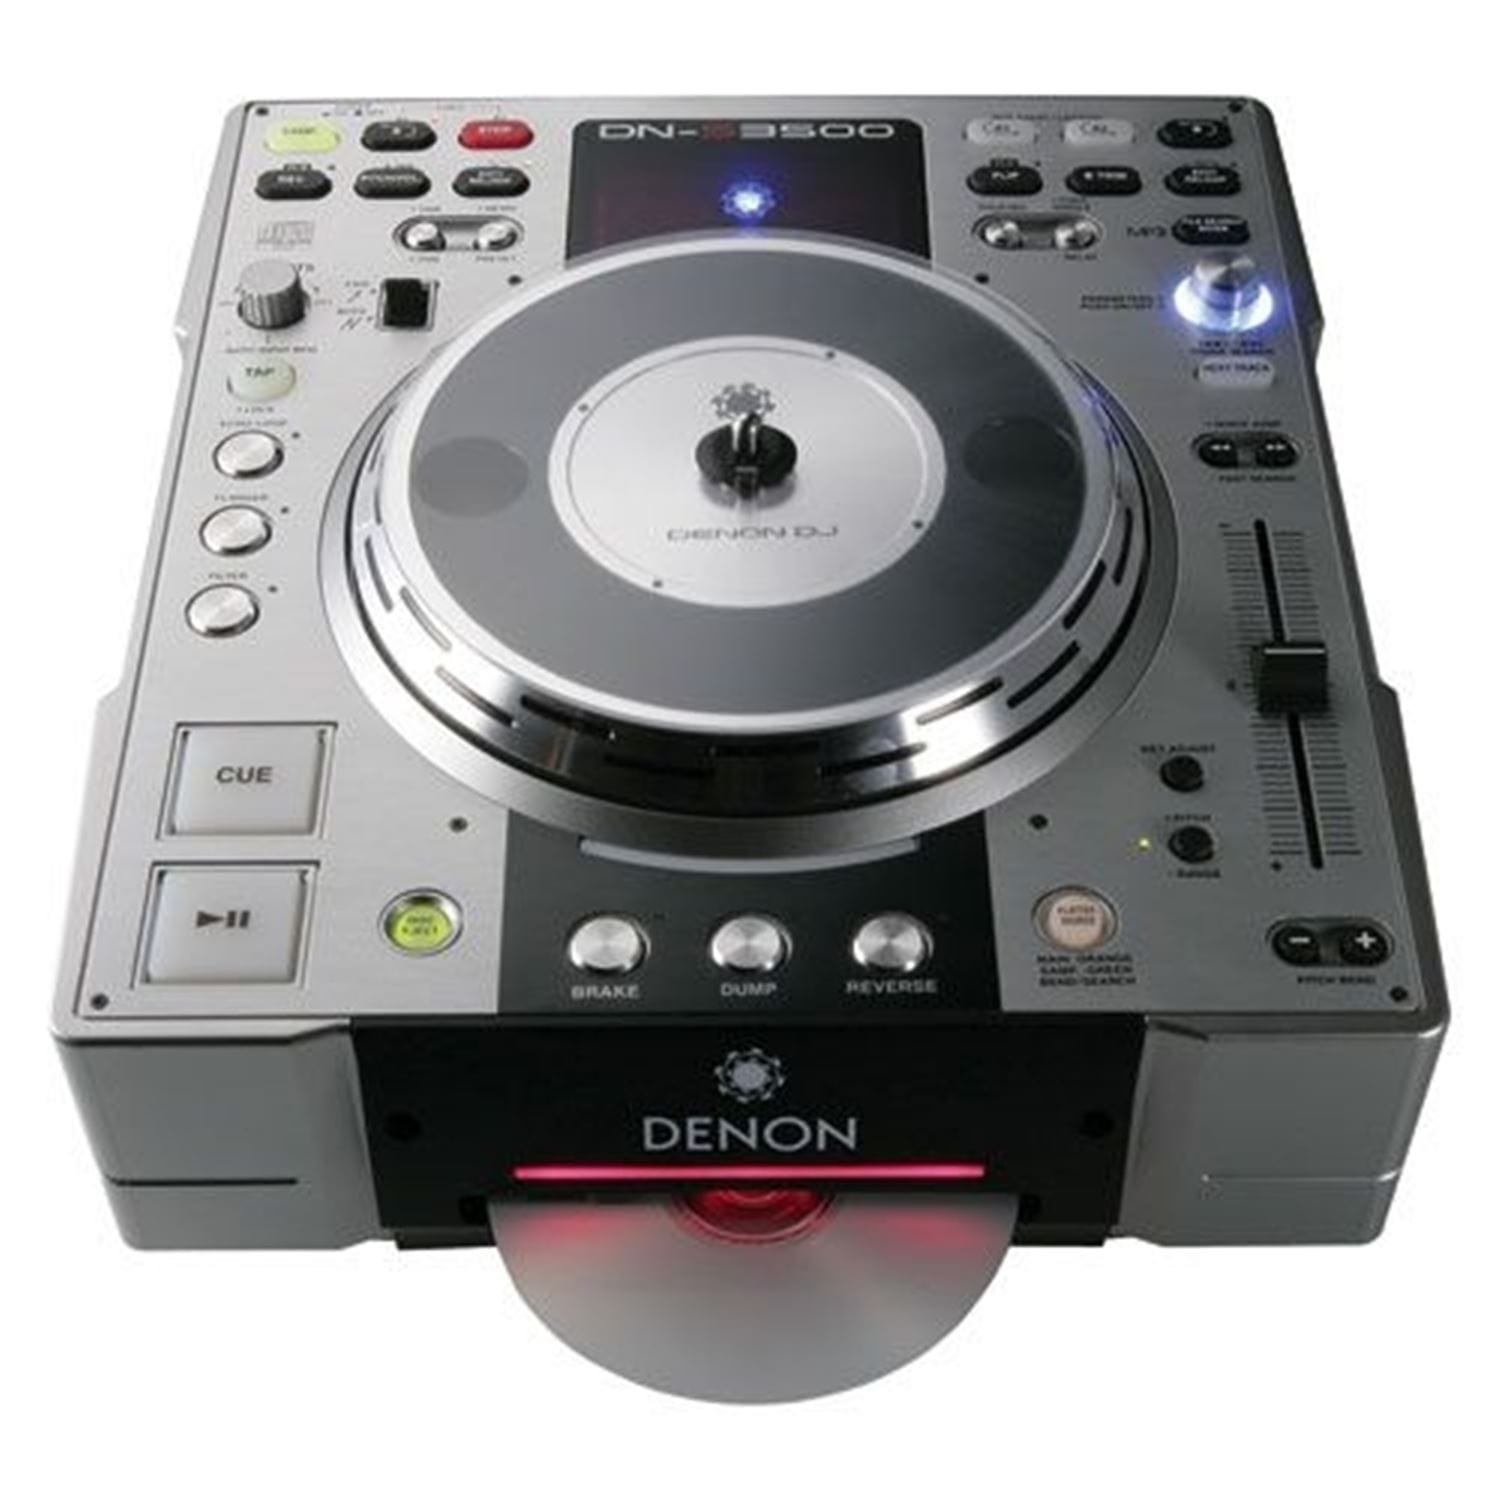 Denon DJ DN-S3500 Table Top CD/MP3 Player